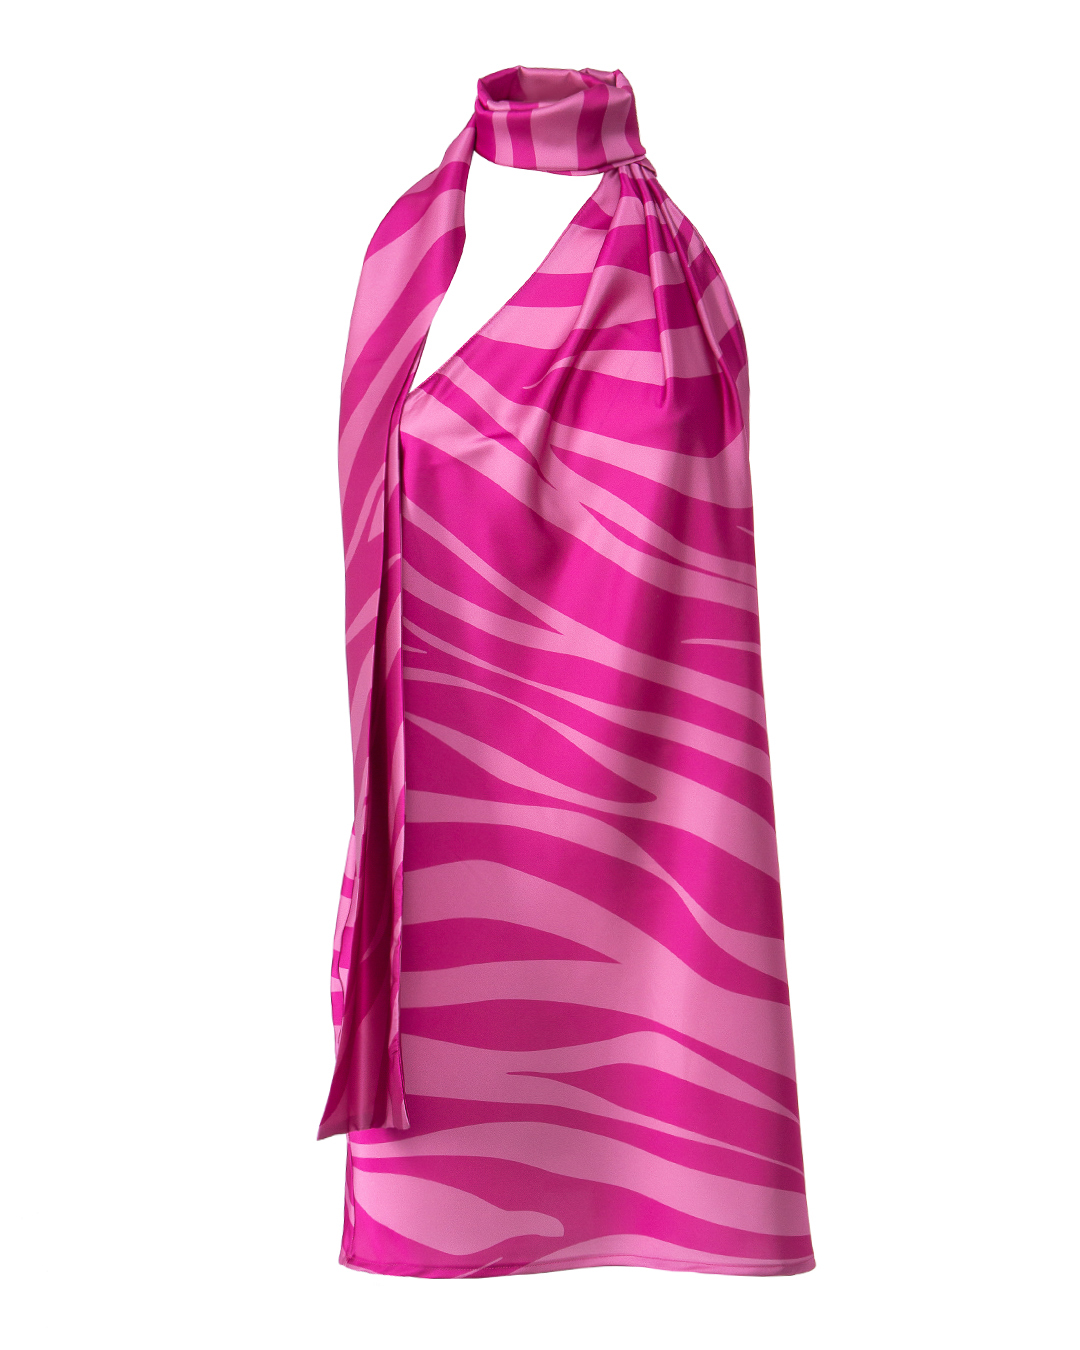 платье мини NINEMINUTES THEMARSMINISAFARI розовый+красный 40, размер 40, цвет розовый+красный THEMARSMINISAFARI розовый+красный 40 - фото 1